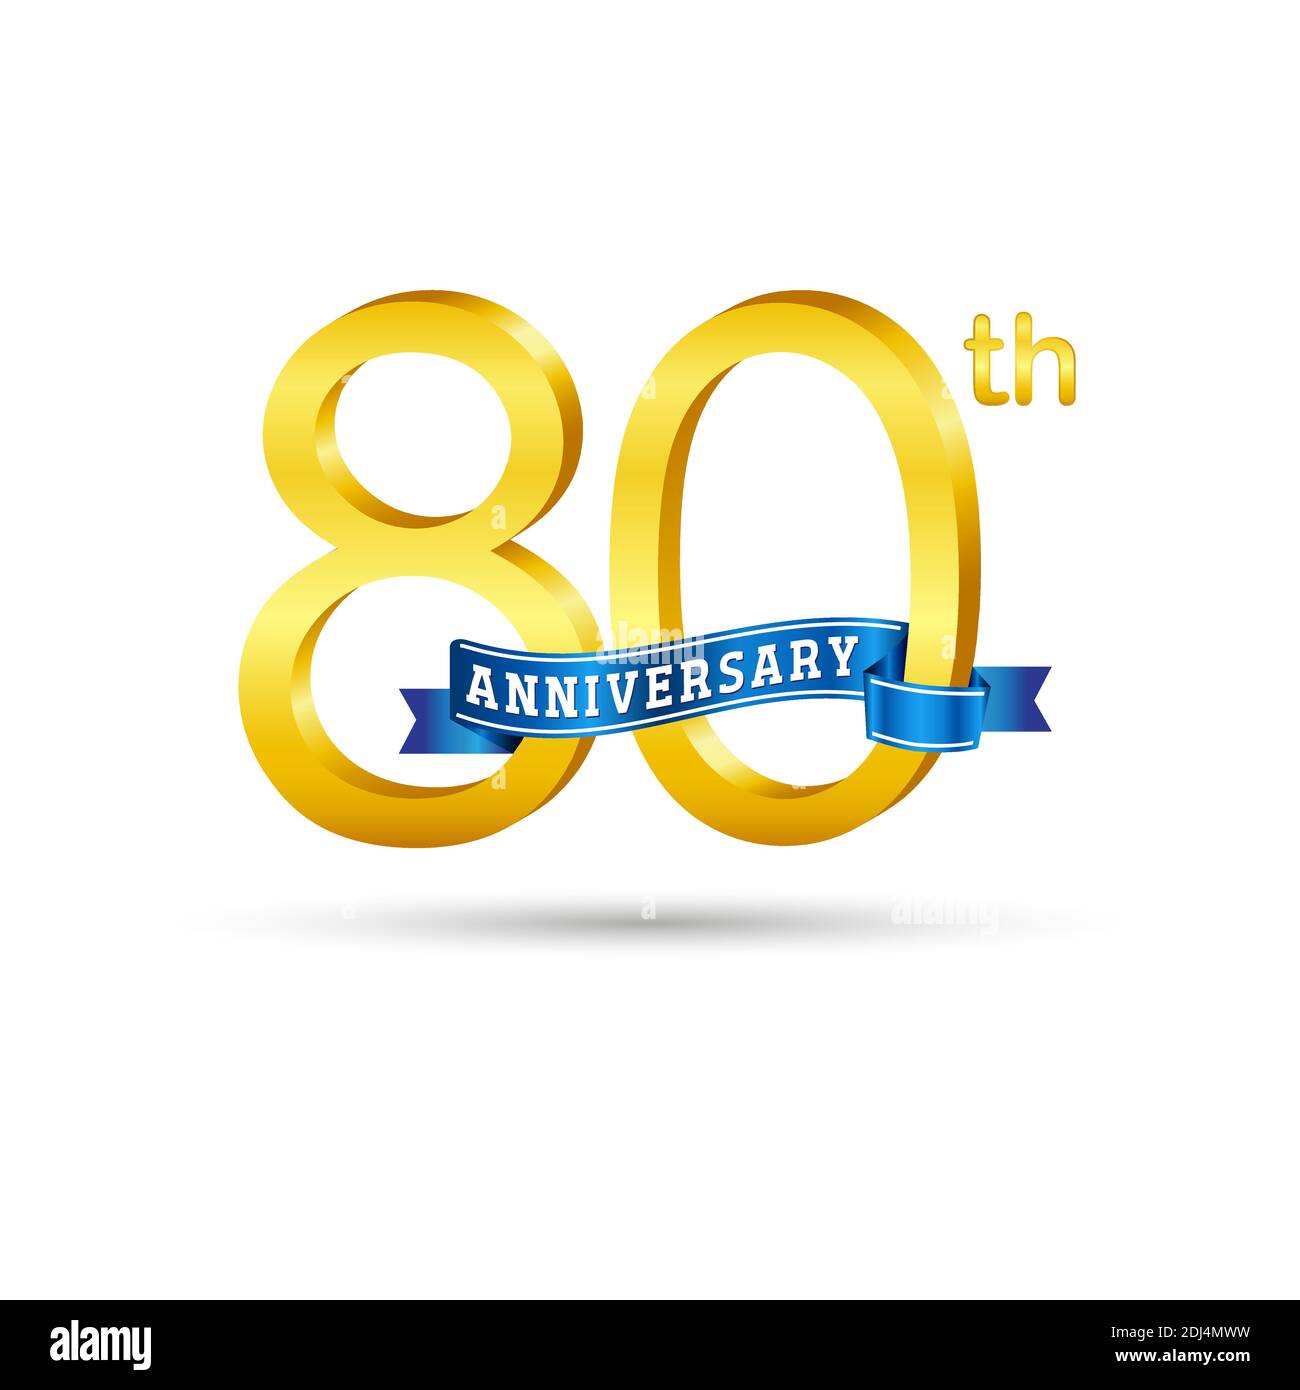 Logo du 80e anniversaire doré avec ruban bleu isolé sur fond blanc. logo 3d Gold Anniversary Illustration de Vecteur